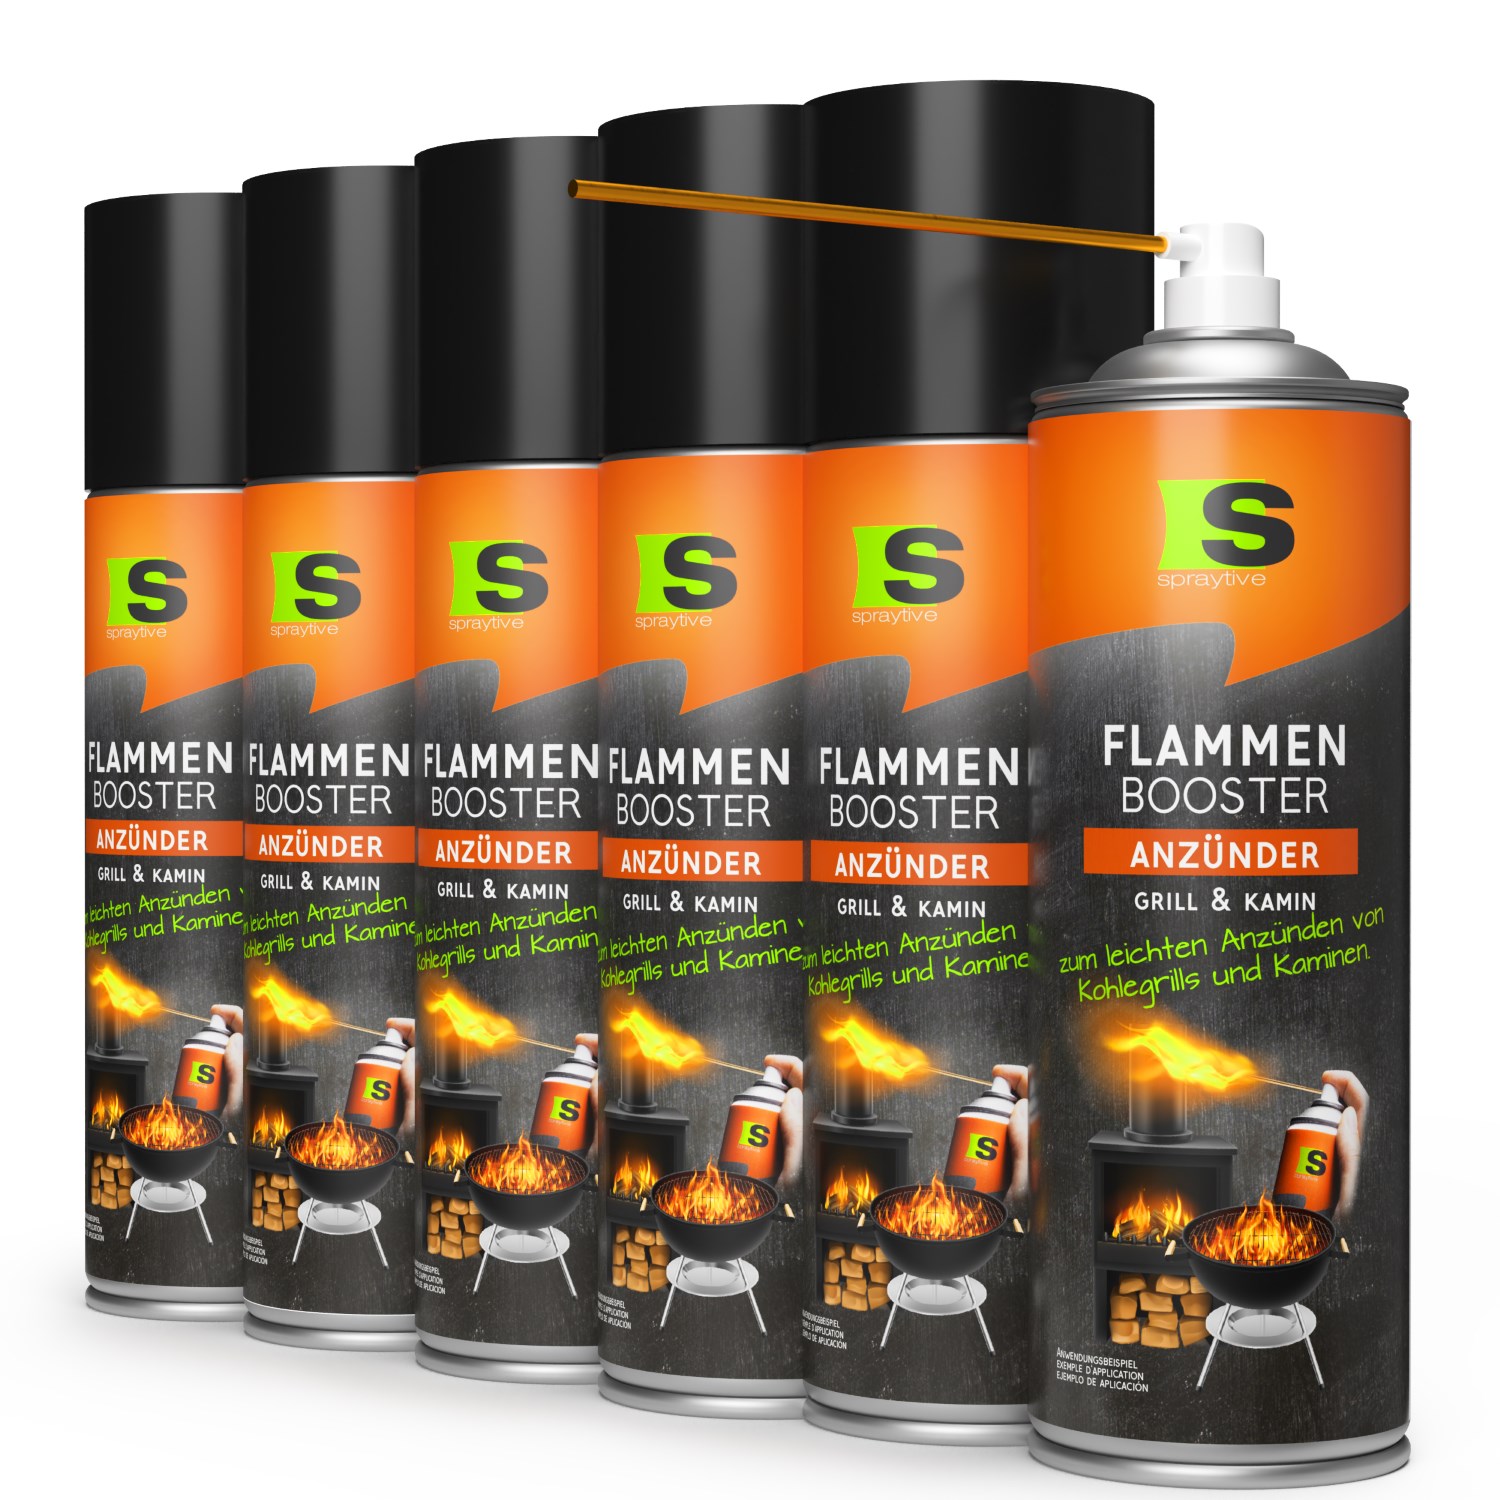 6 x 500ml Flammen-Booster Grill- & Kaminanzünder - Für Kohlegrill, Kamin & Feuerkorb